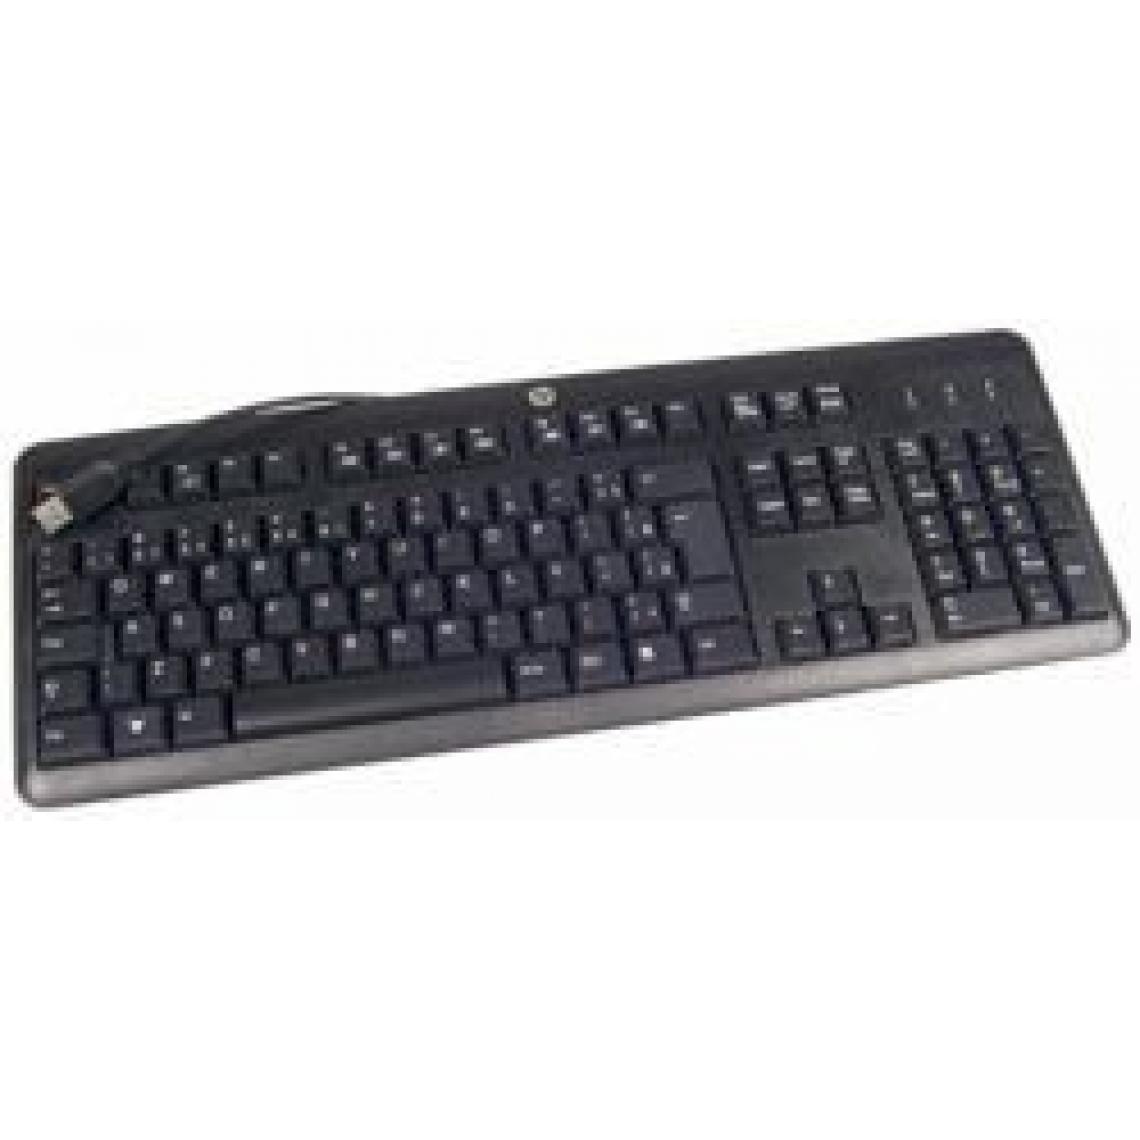 Inconnu - HP 672647-033 USB QWERTY Anglais britannique Noir clavier - claviers (Standard, Avec fil, USB, Clavier à membrane, QWERTY, Noir) - Clavier